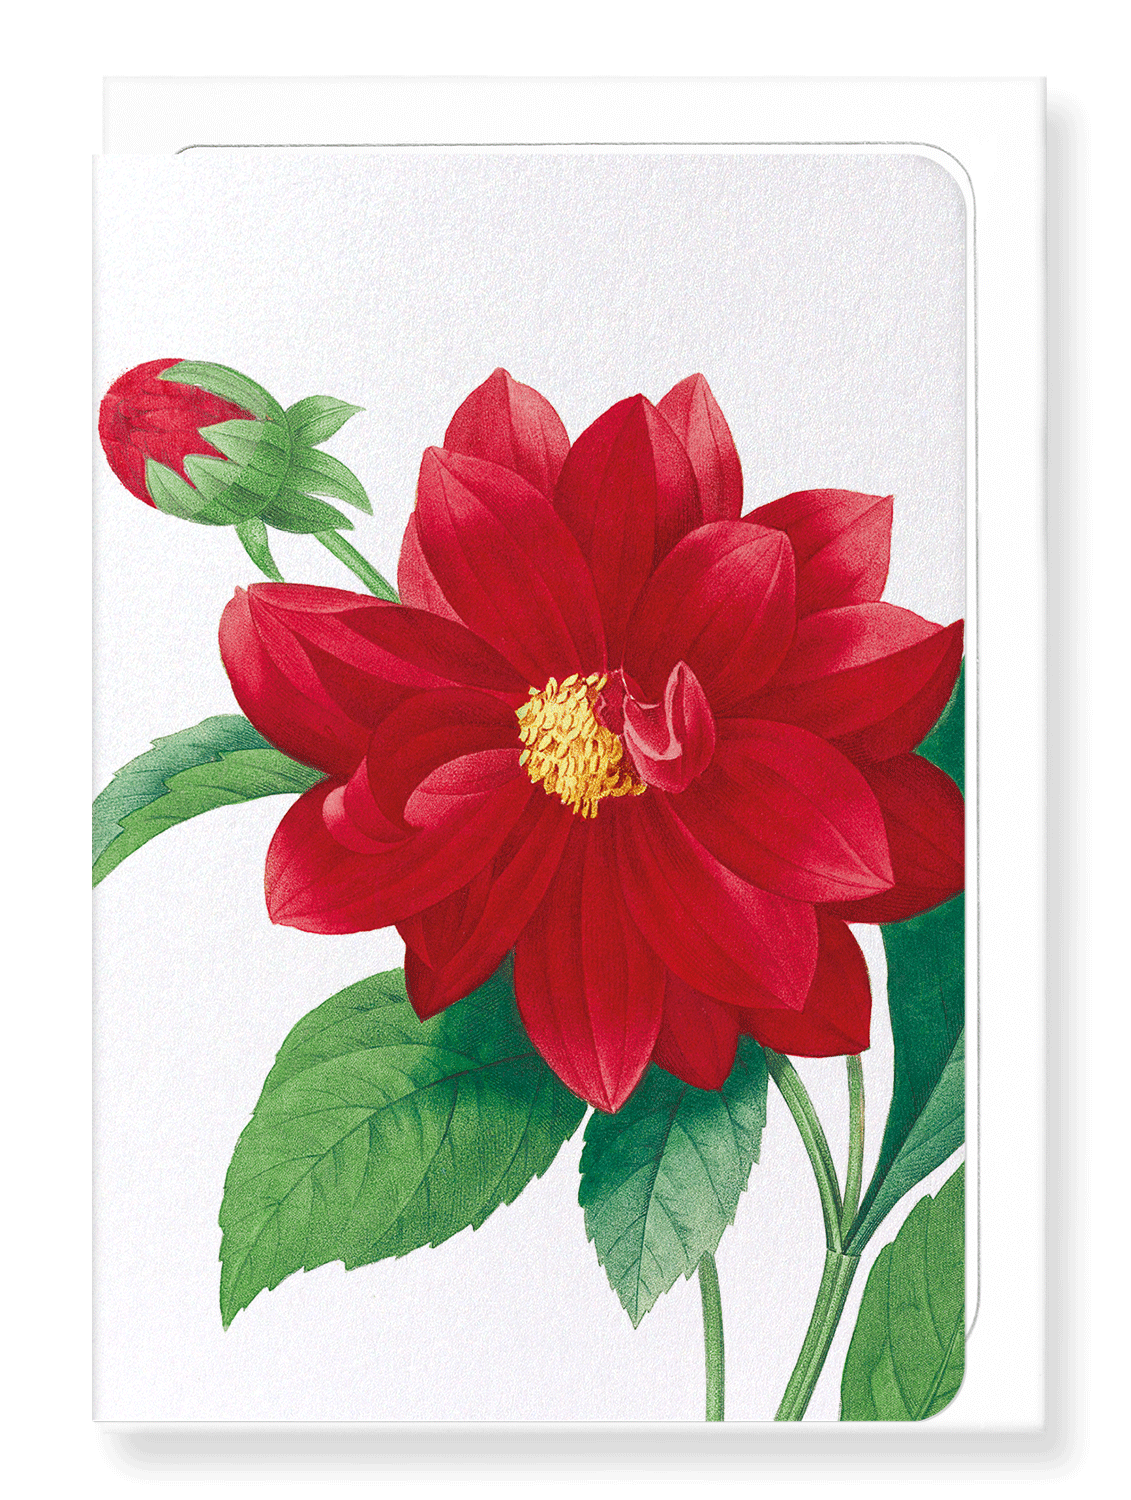 Ezen Designs - Dahlia double (detail) - Greeting Card - Front